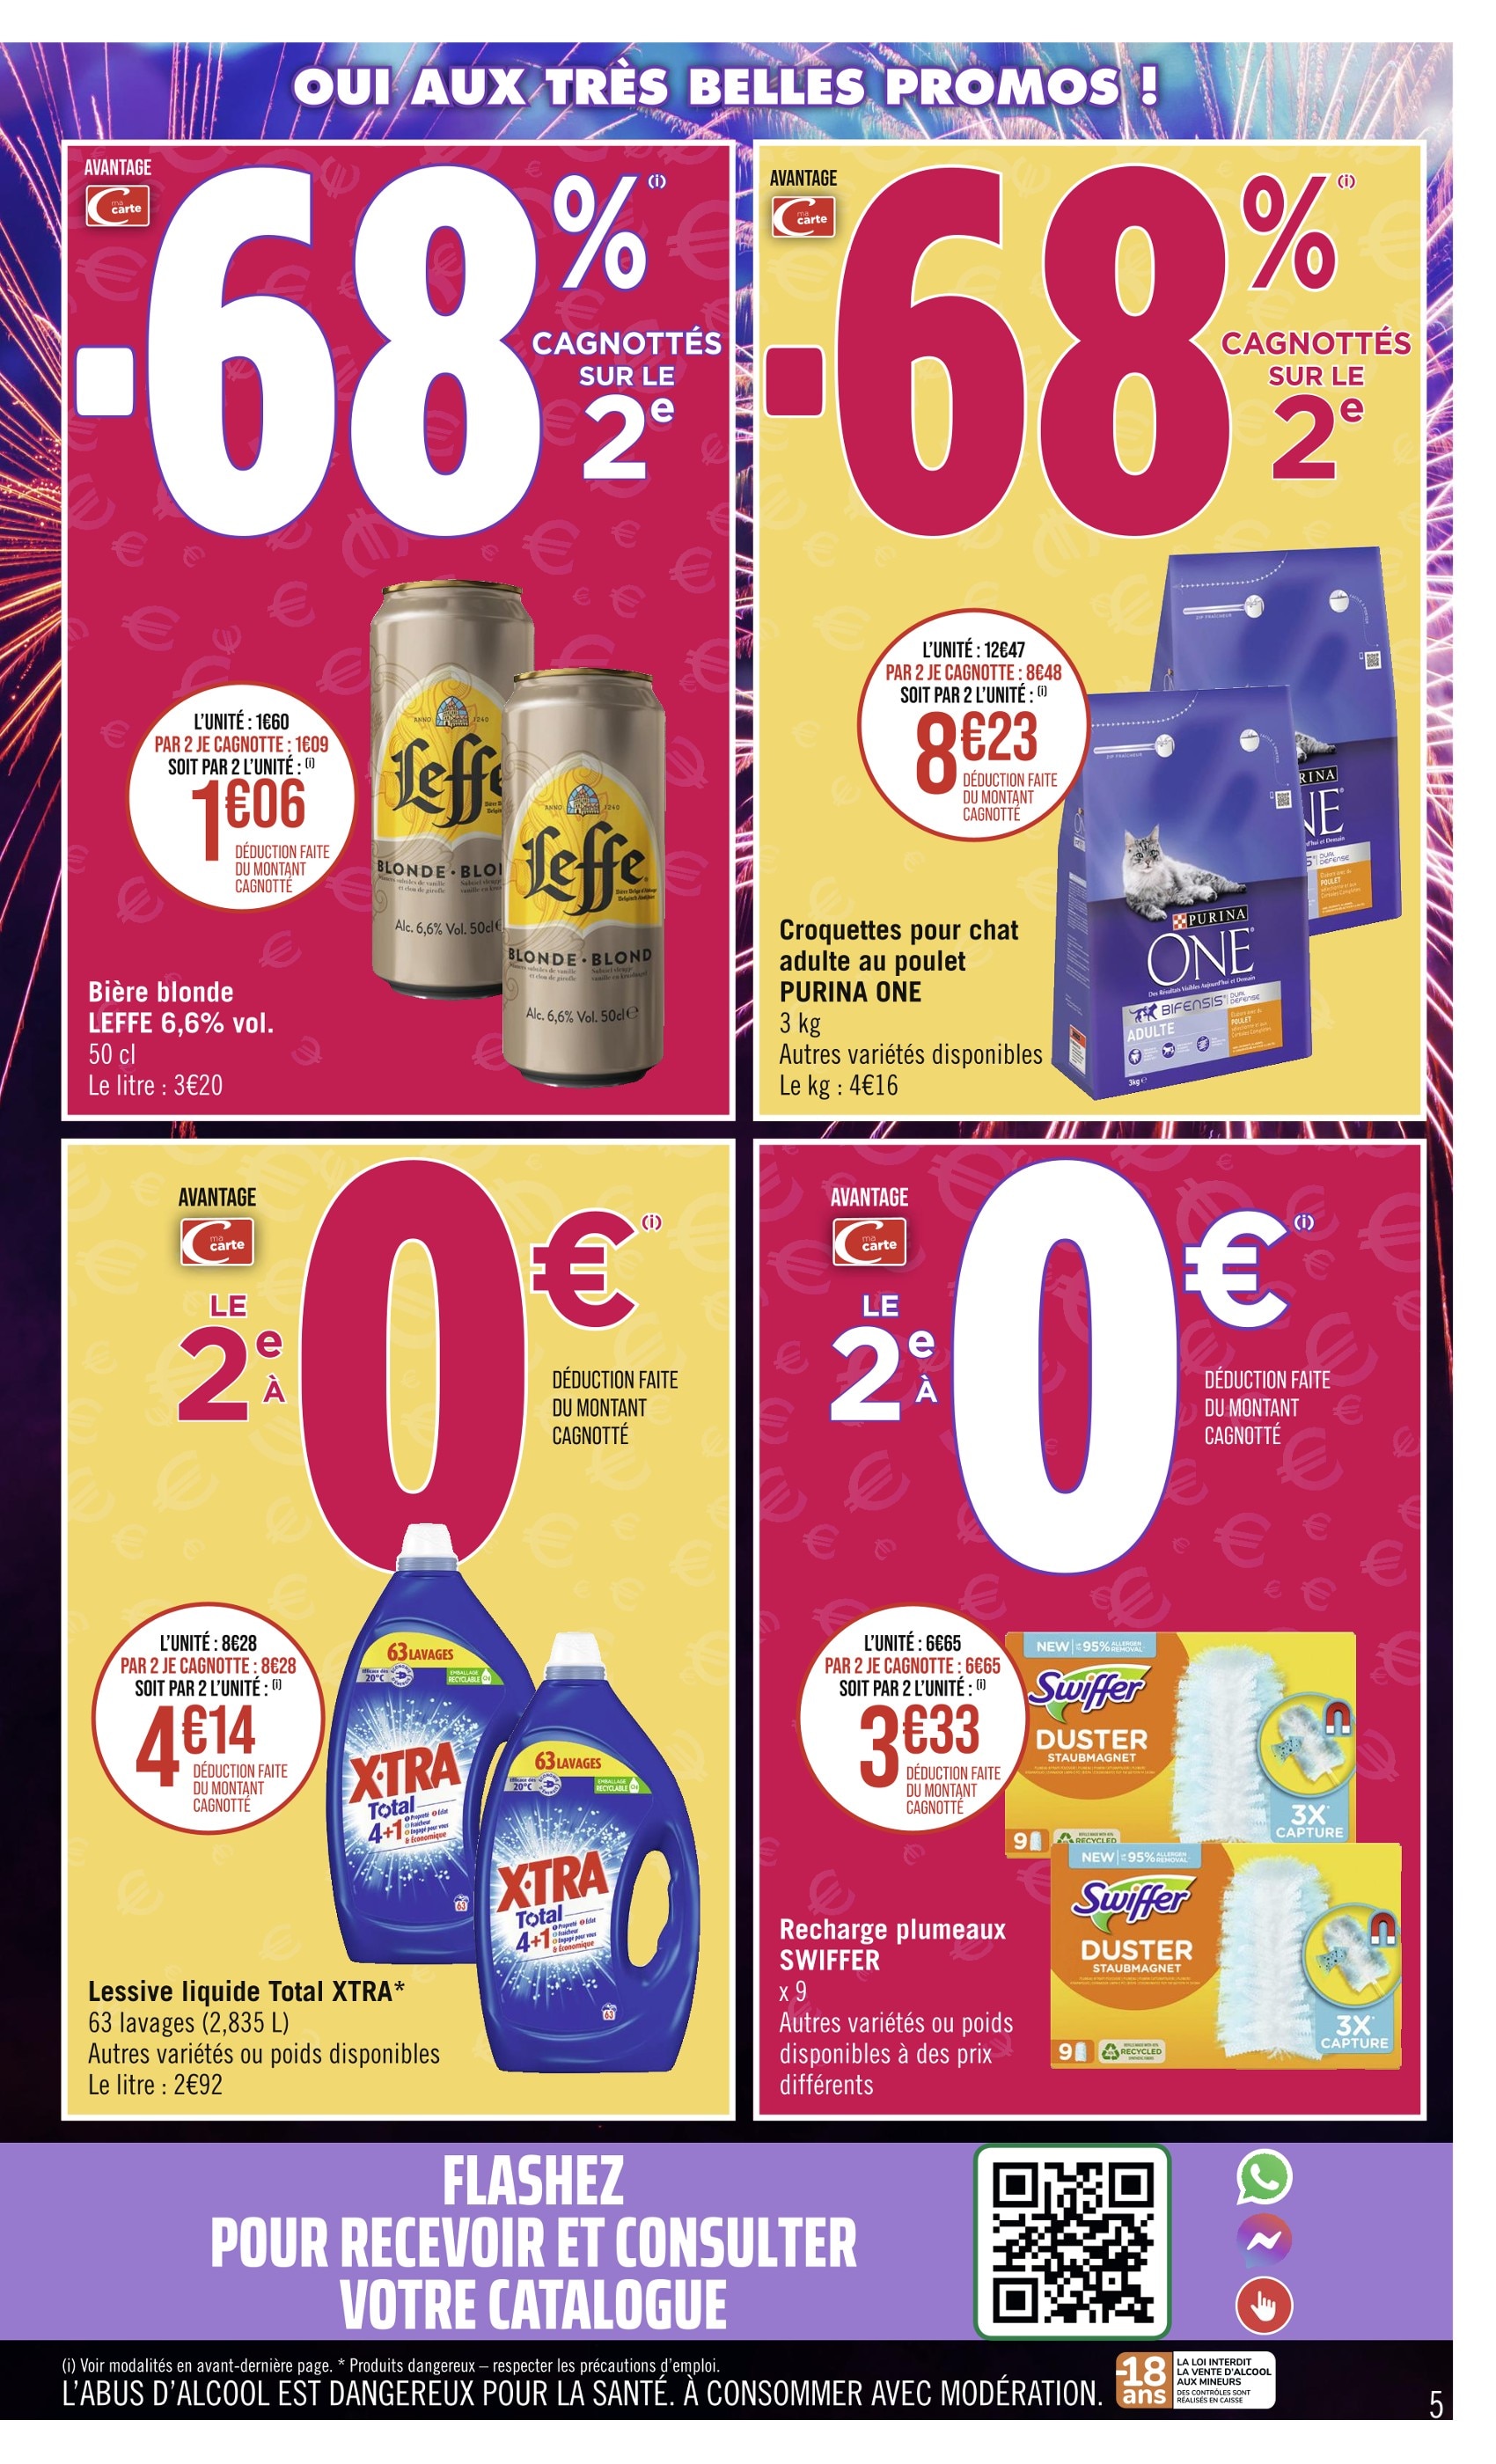 Huile Isio 4 Carrefour ᐅ Promos et prix dans le catalogue de la semaine